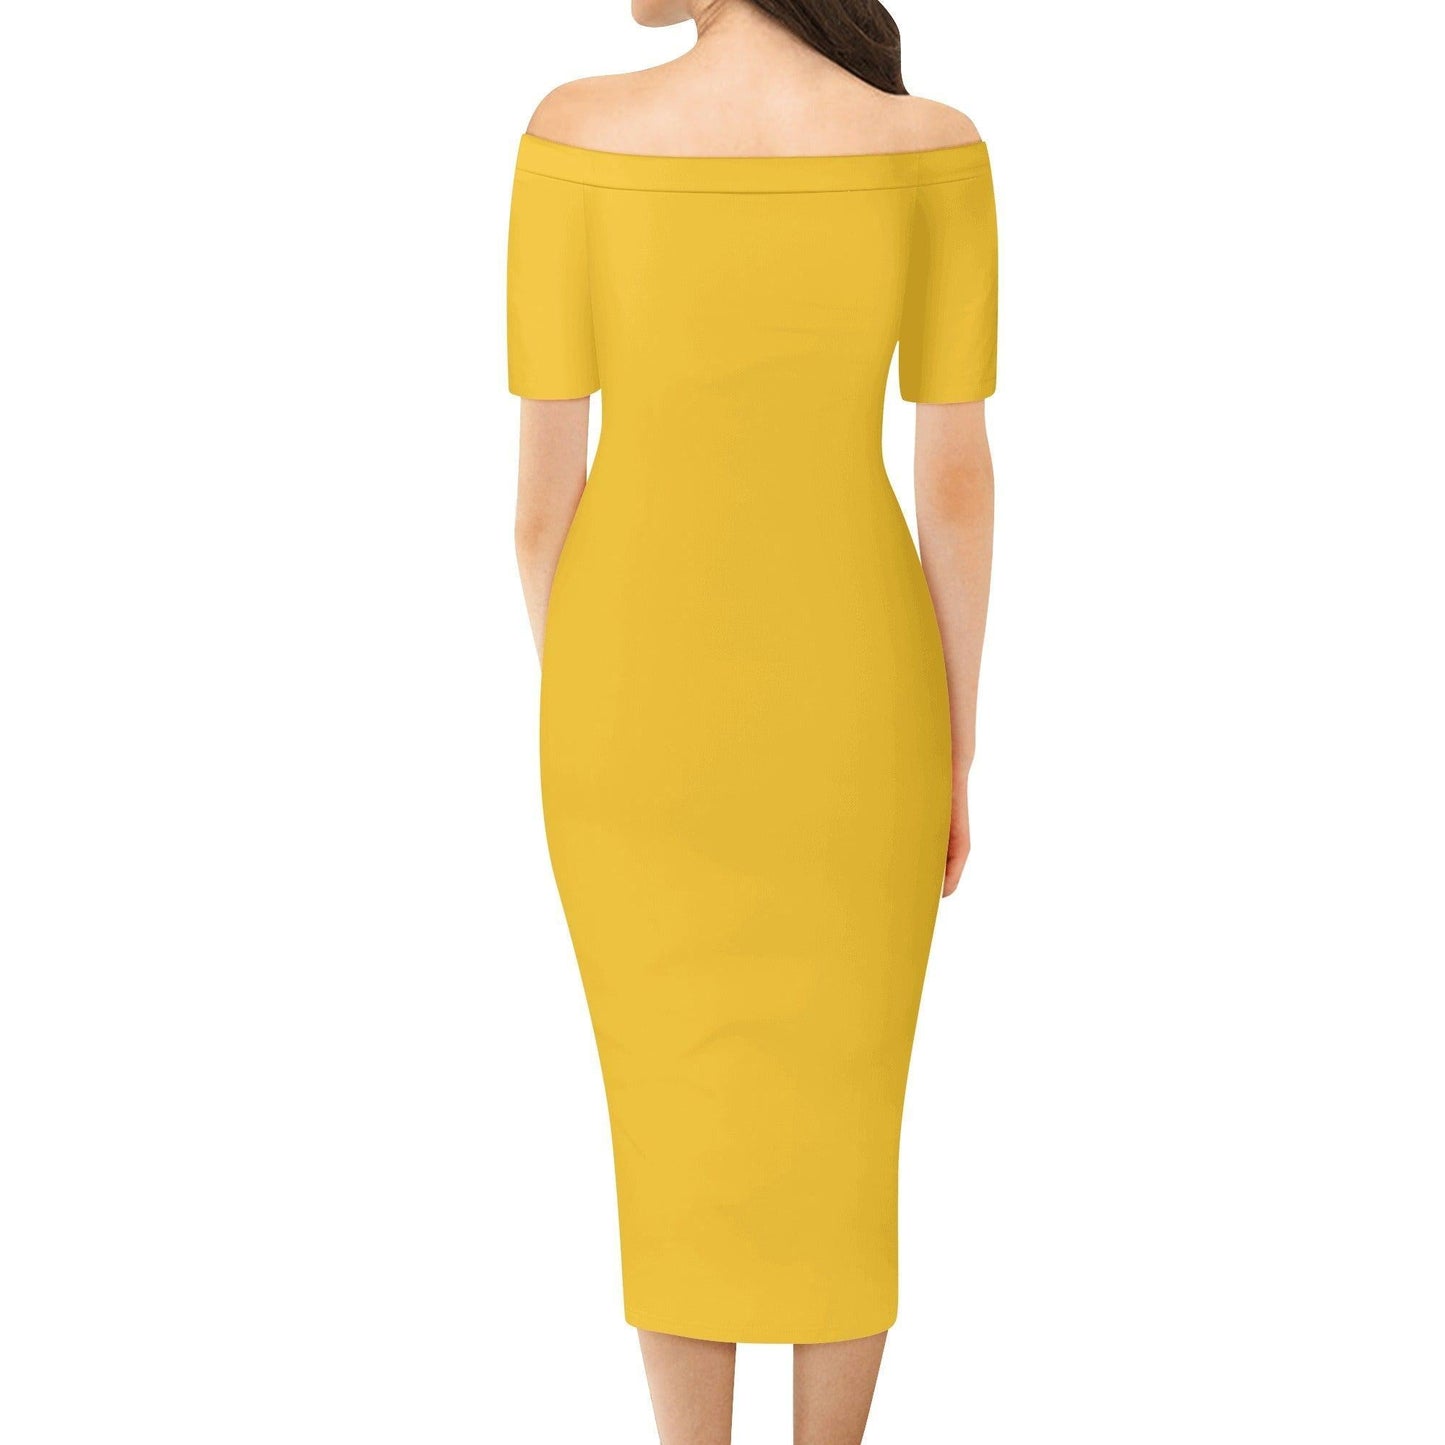 Gelbes Off-Shoulder-Kleid -- Gelbes Off-Shoulder-Kleid - undefined Off-Shoulder-Kleid | JLR Design